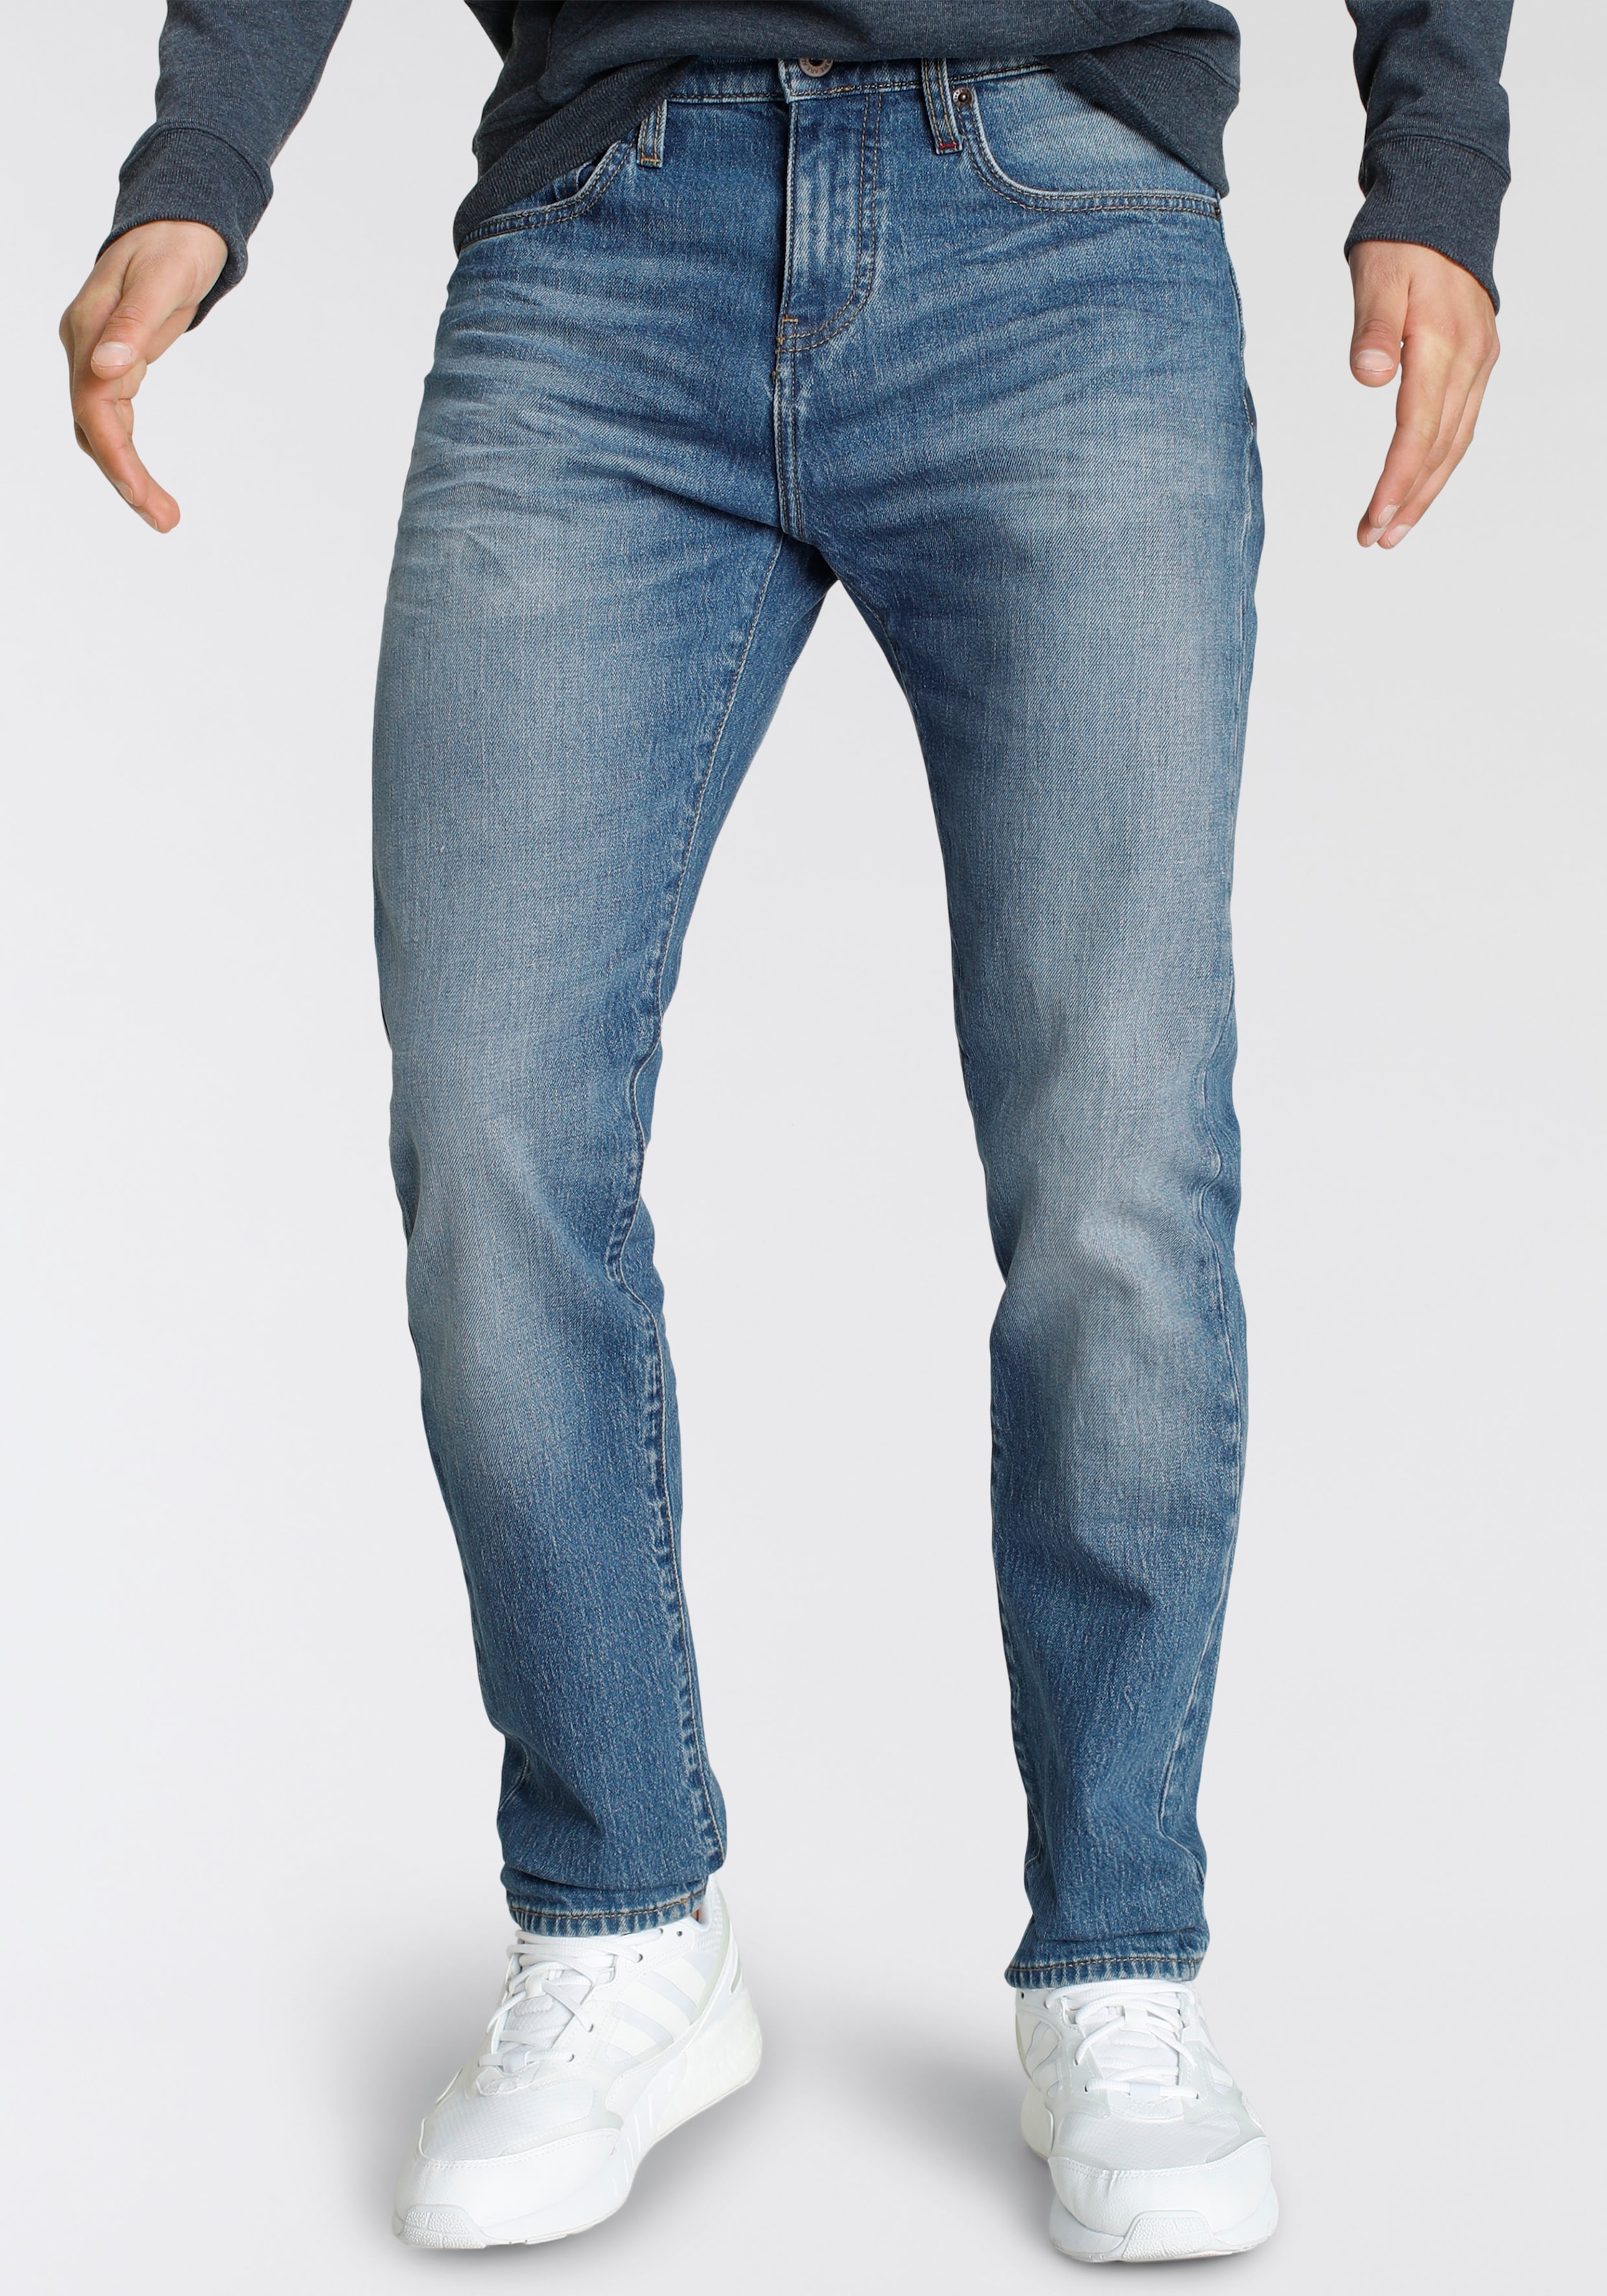 Alife & Kickin Tapered-fit-Jeans "LennoxAK", Ökologische, wassersparende Produktion durch Ozon Wash